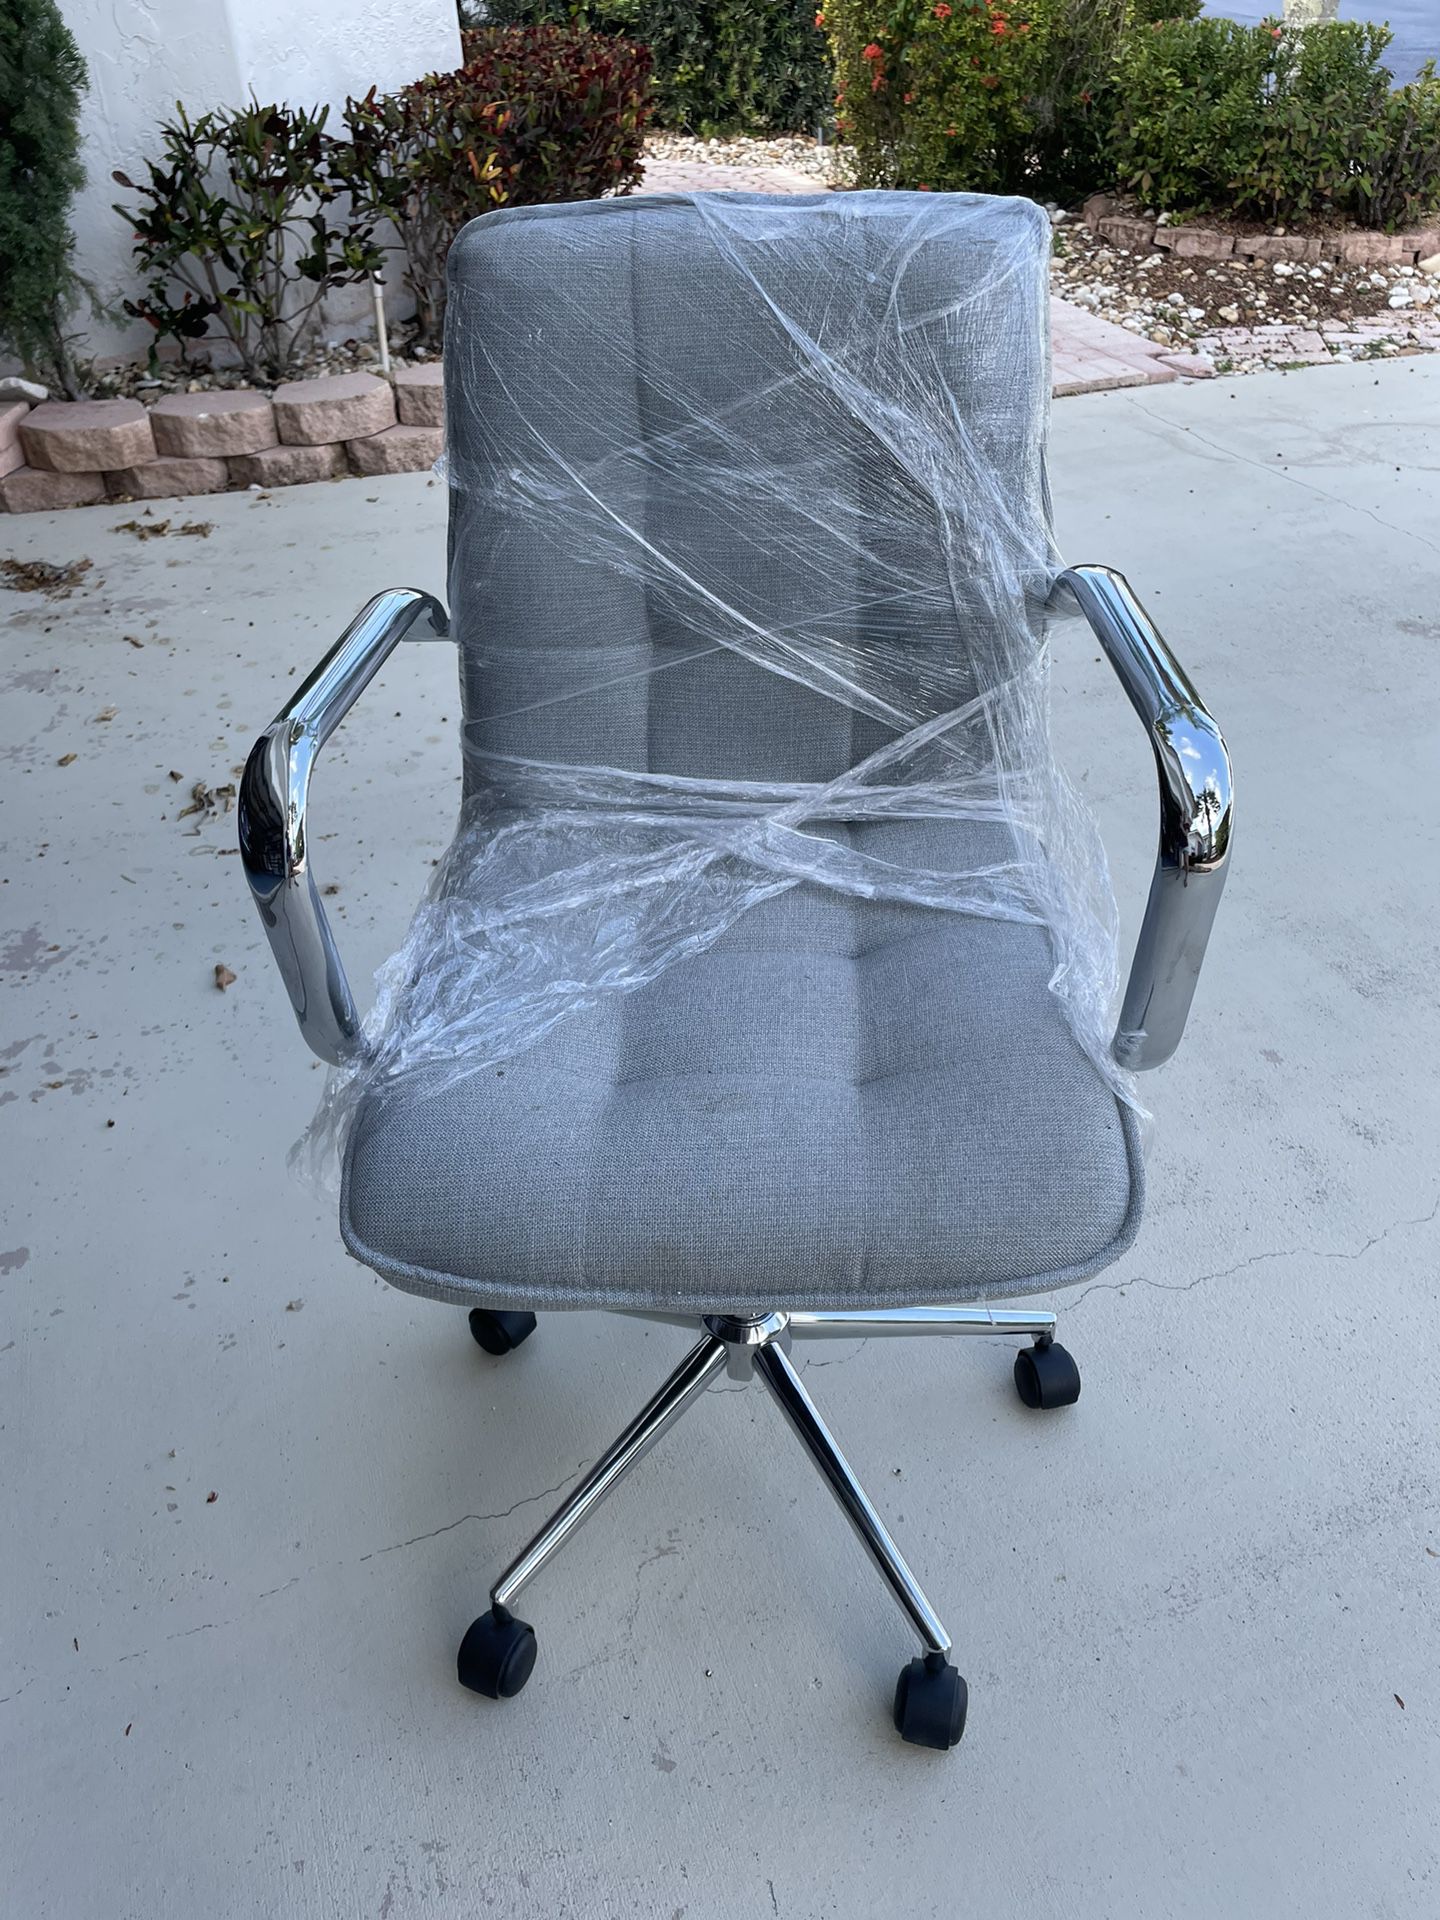 Swivel Chair For Desk